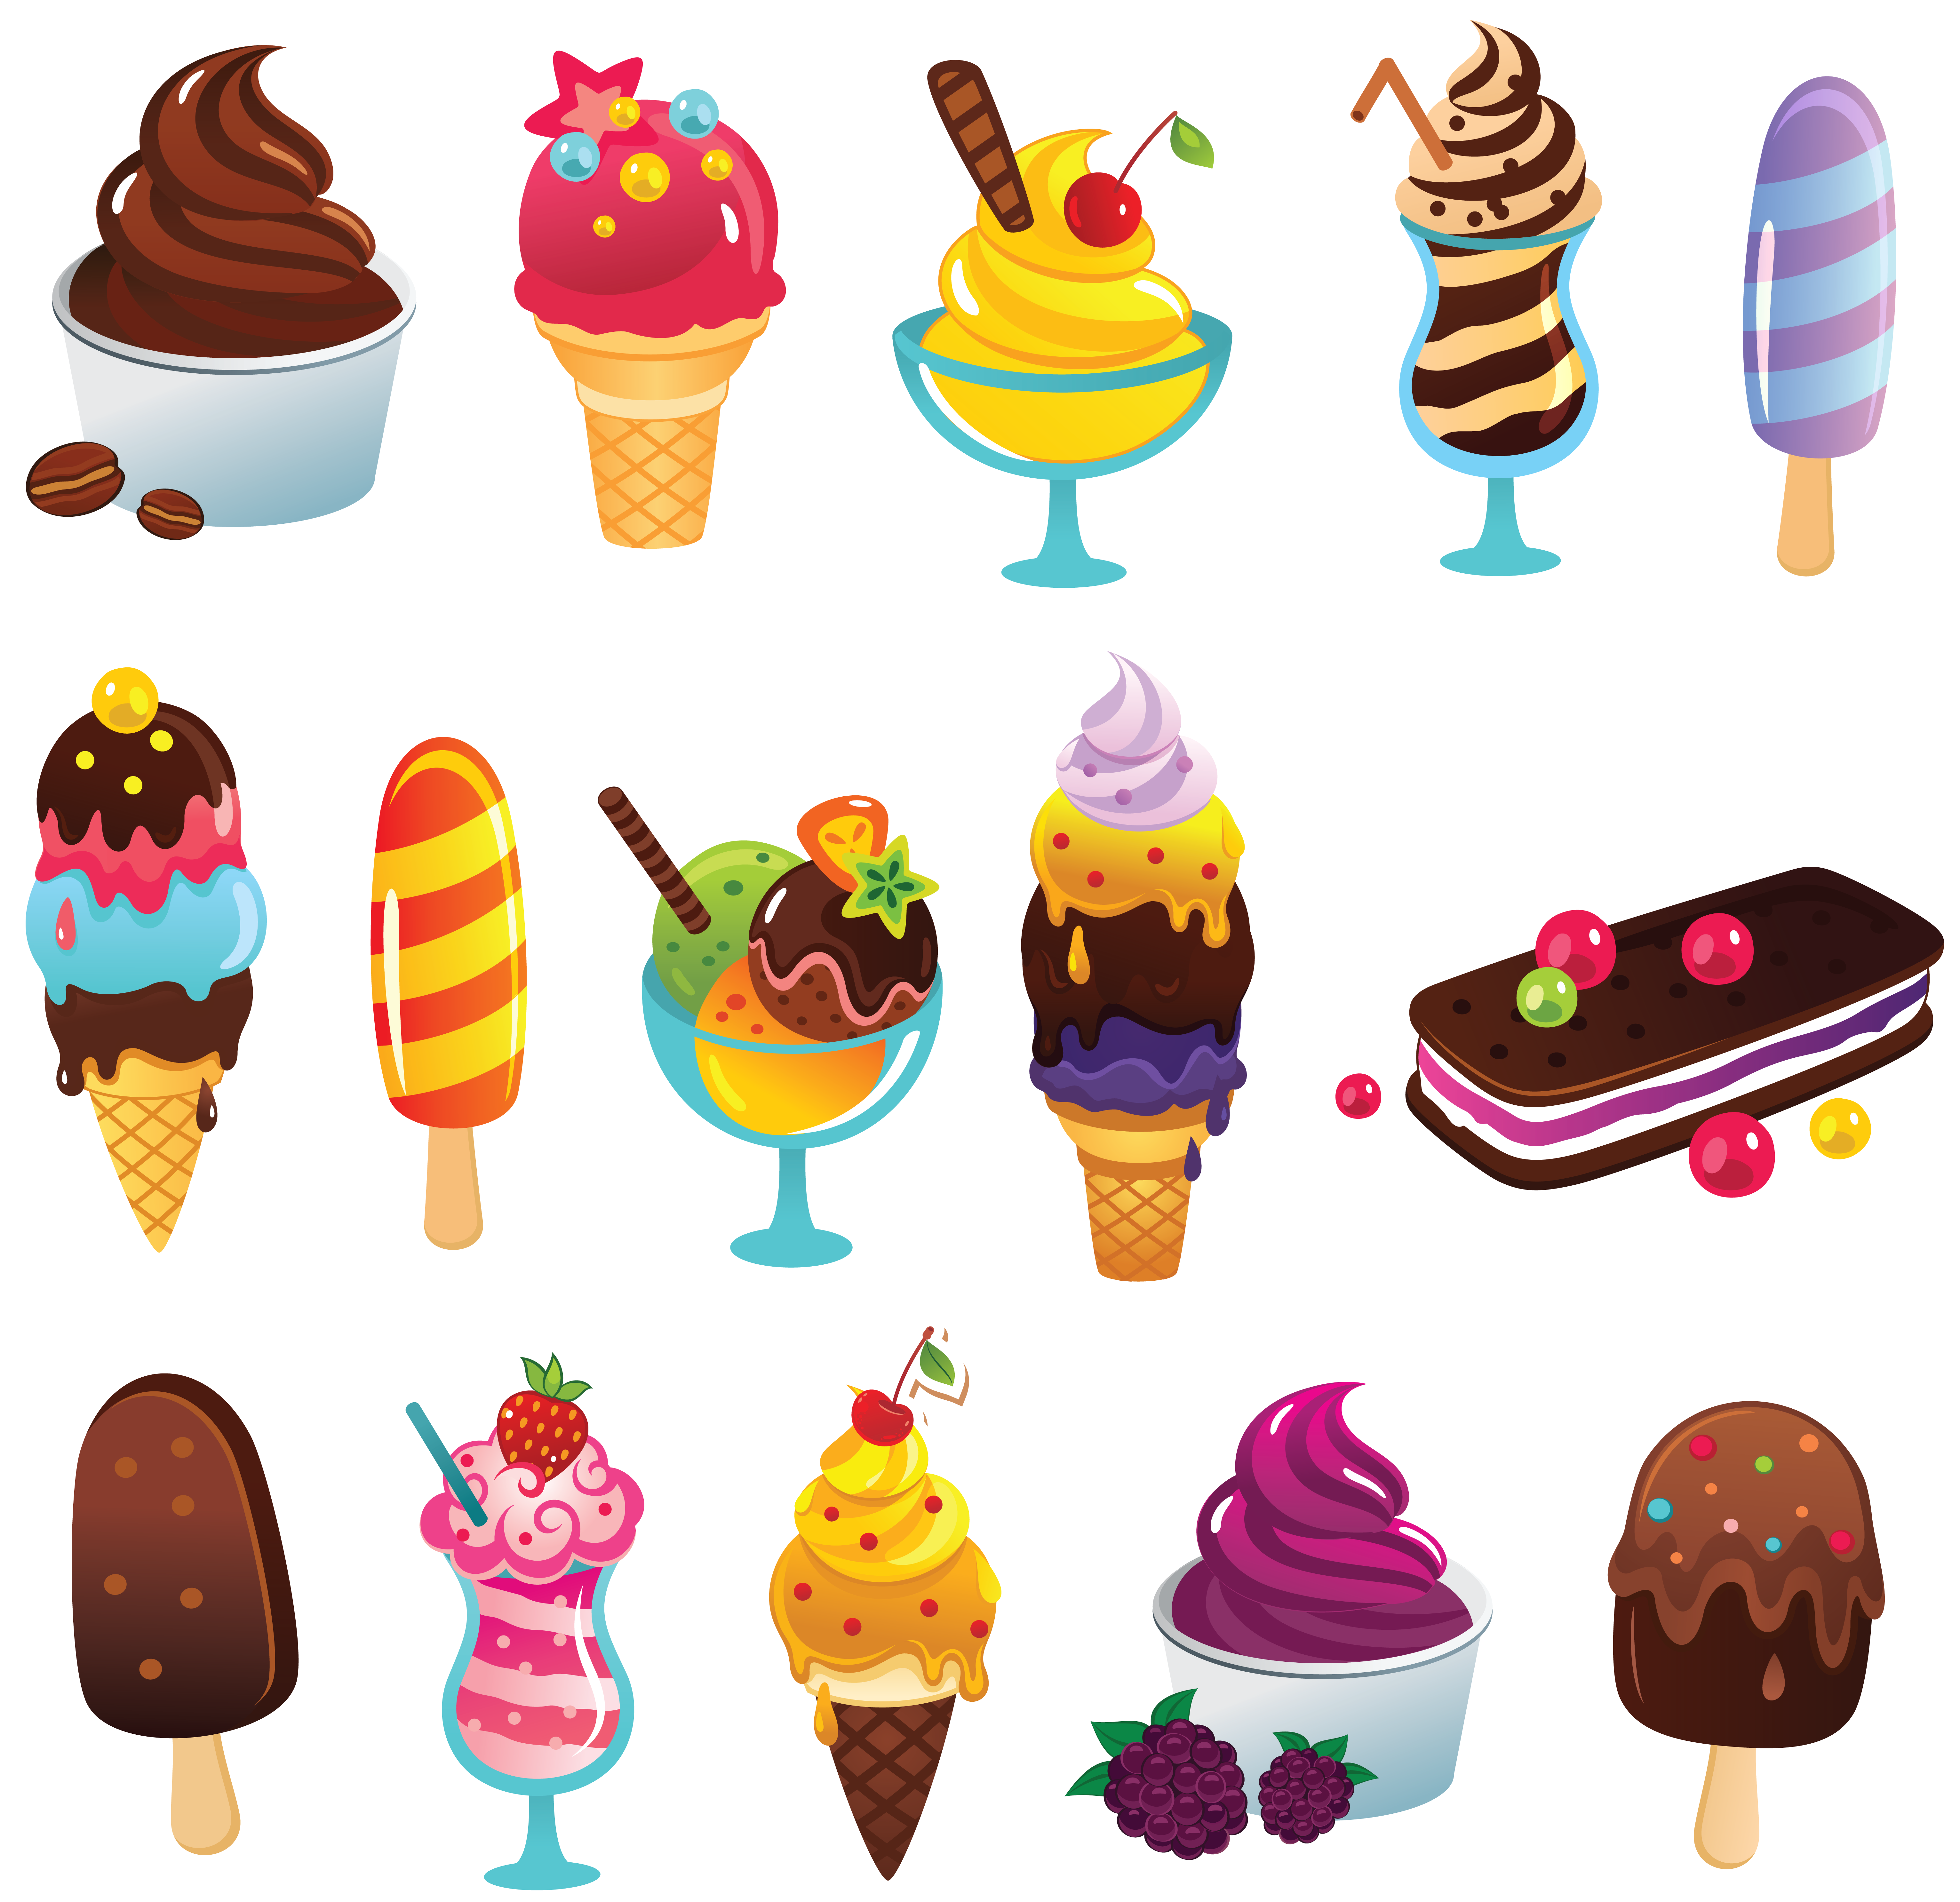 تصویر زمینه از بستنی های خوشمزه و متنوع میوه ای و کیک بستنی